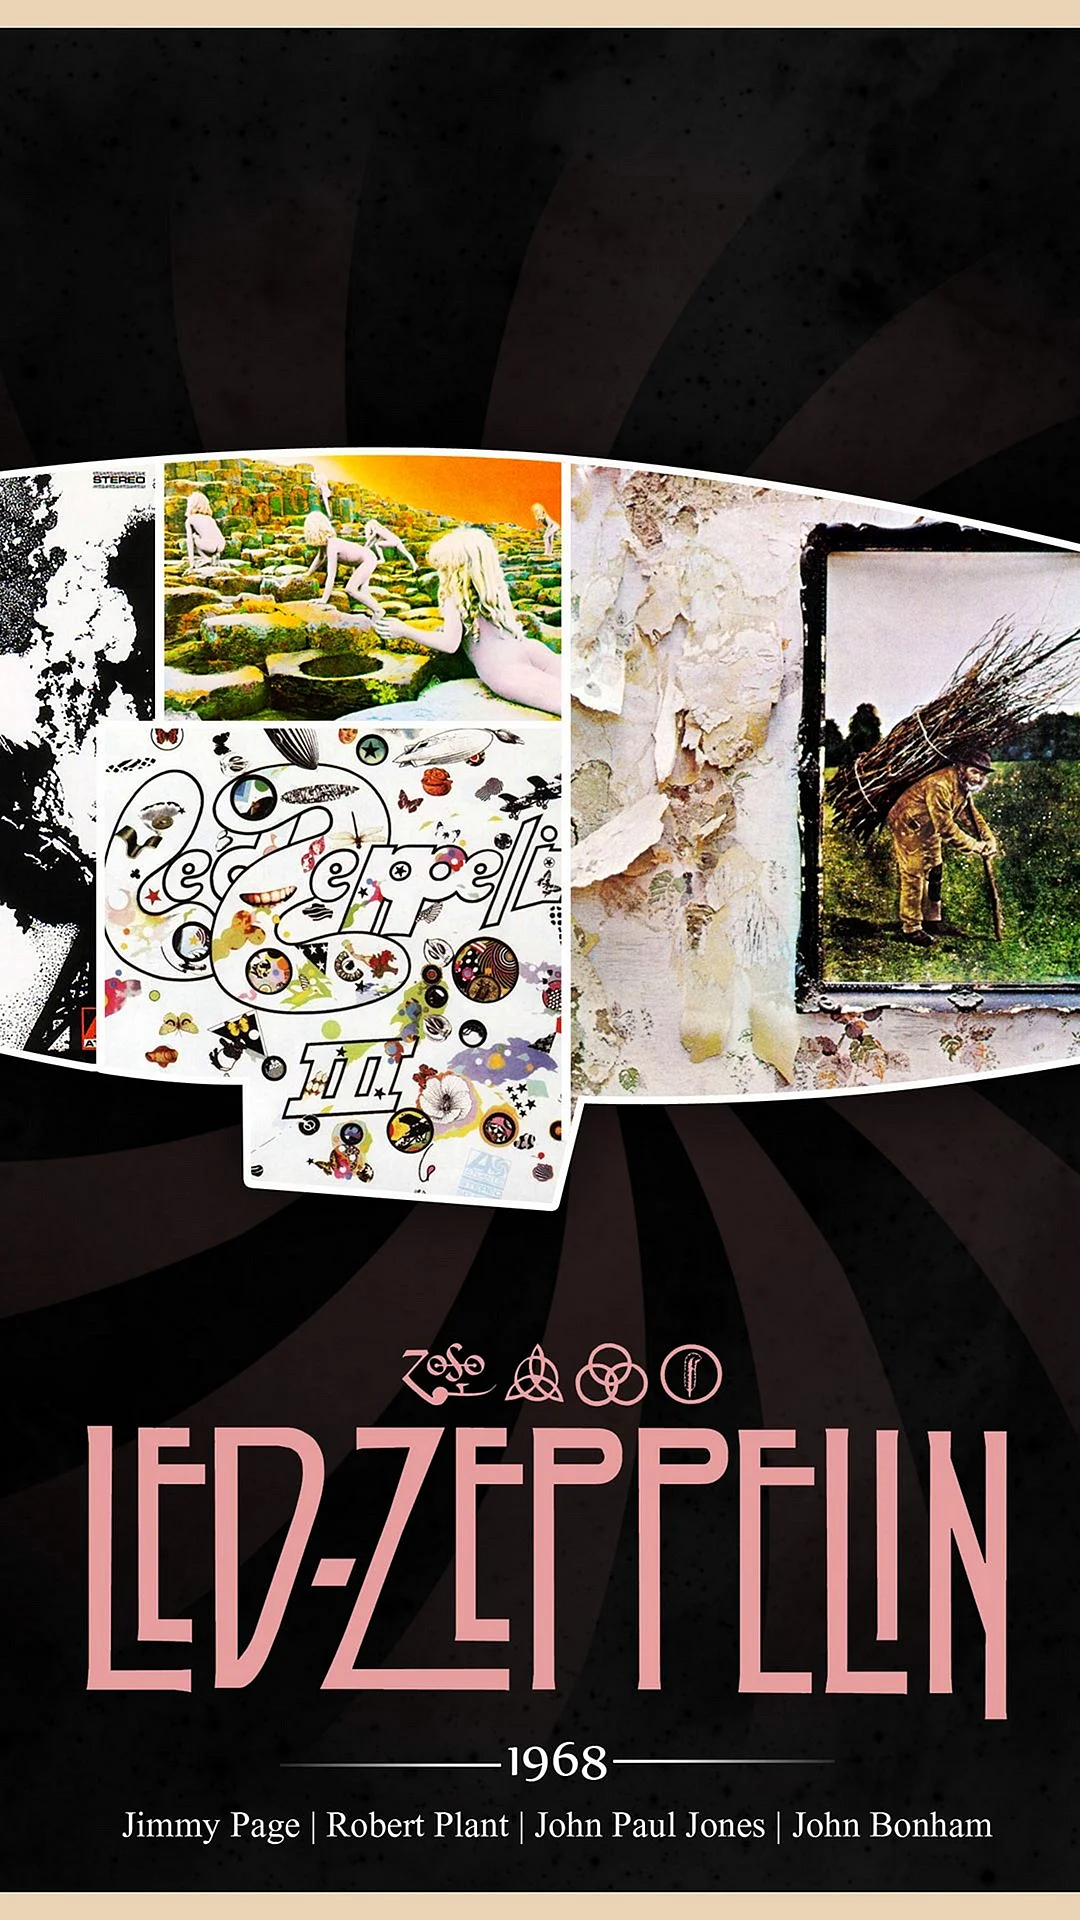 Led Zeppelin Wallpaper For iPhone